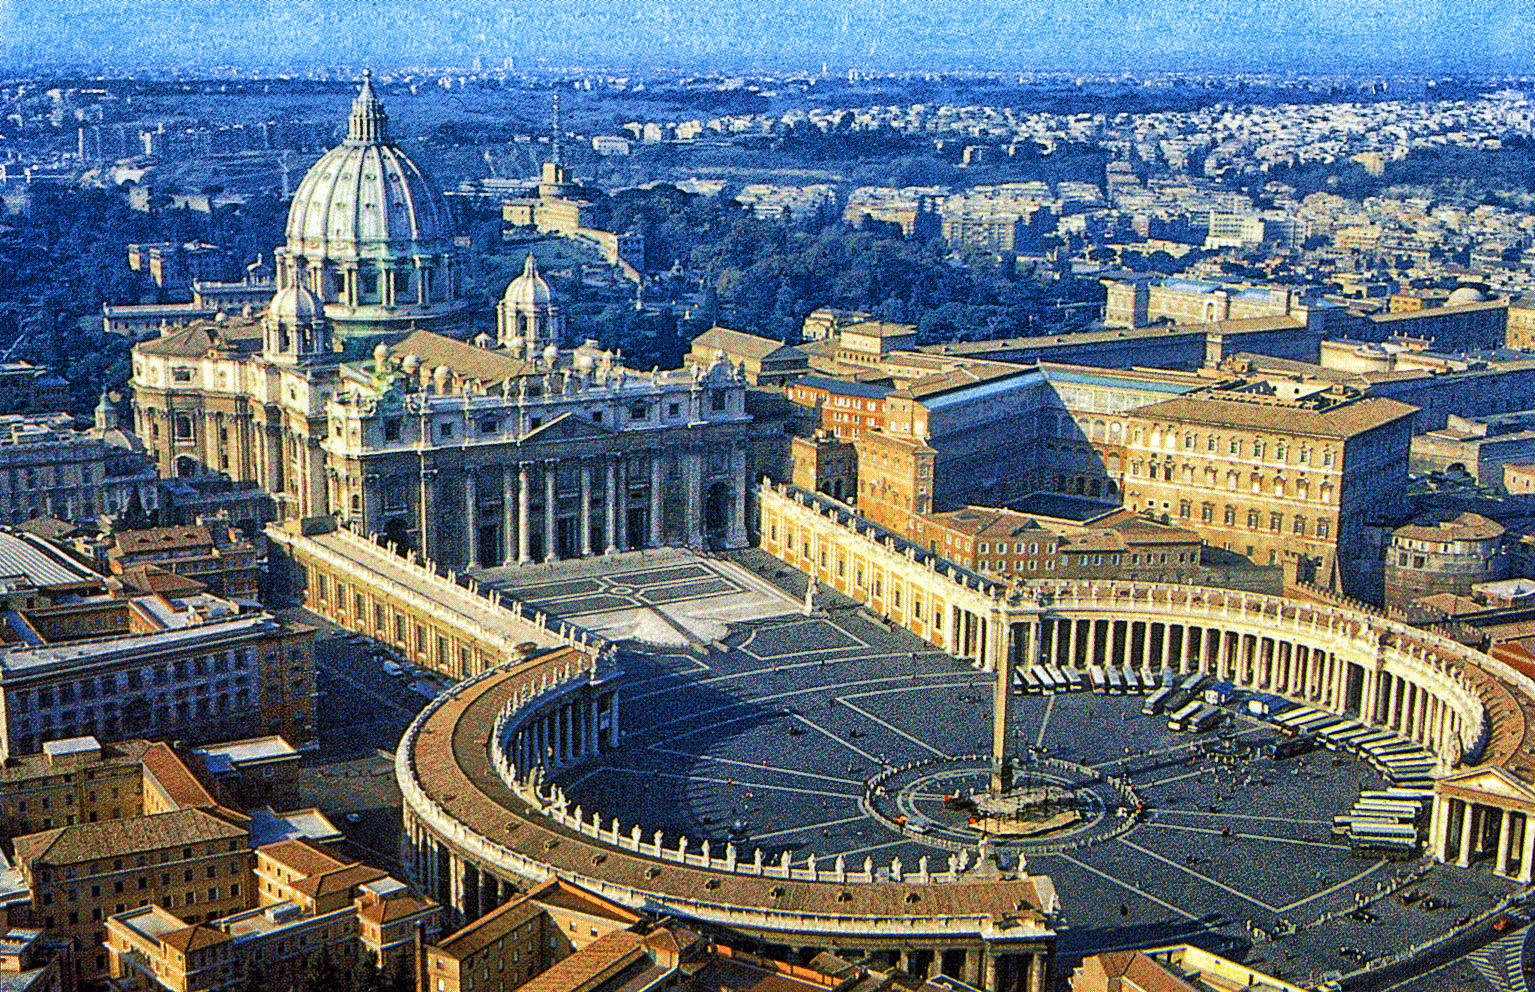 Rom ist einzigartig und immer wieder eine Reise wert. Nicht umsonst heißt es, alle Wege führen nach Rom. Einst war es Mittelpunkt eines Weltreiches, wurde Zentrum der Christenheit und ist heute die lebensfrohe, elegante Hauptstadt Italiens.